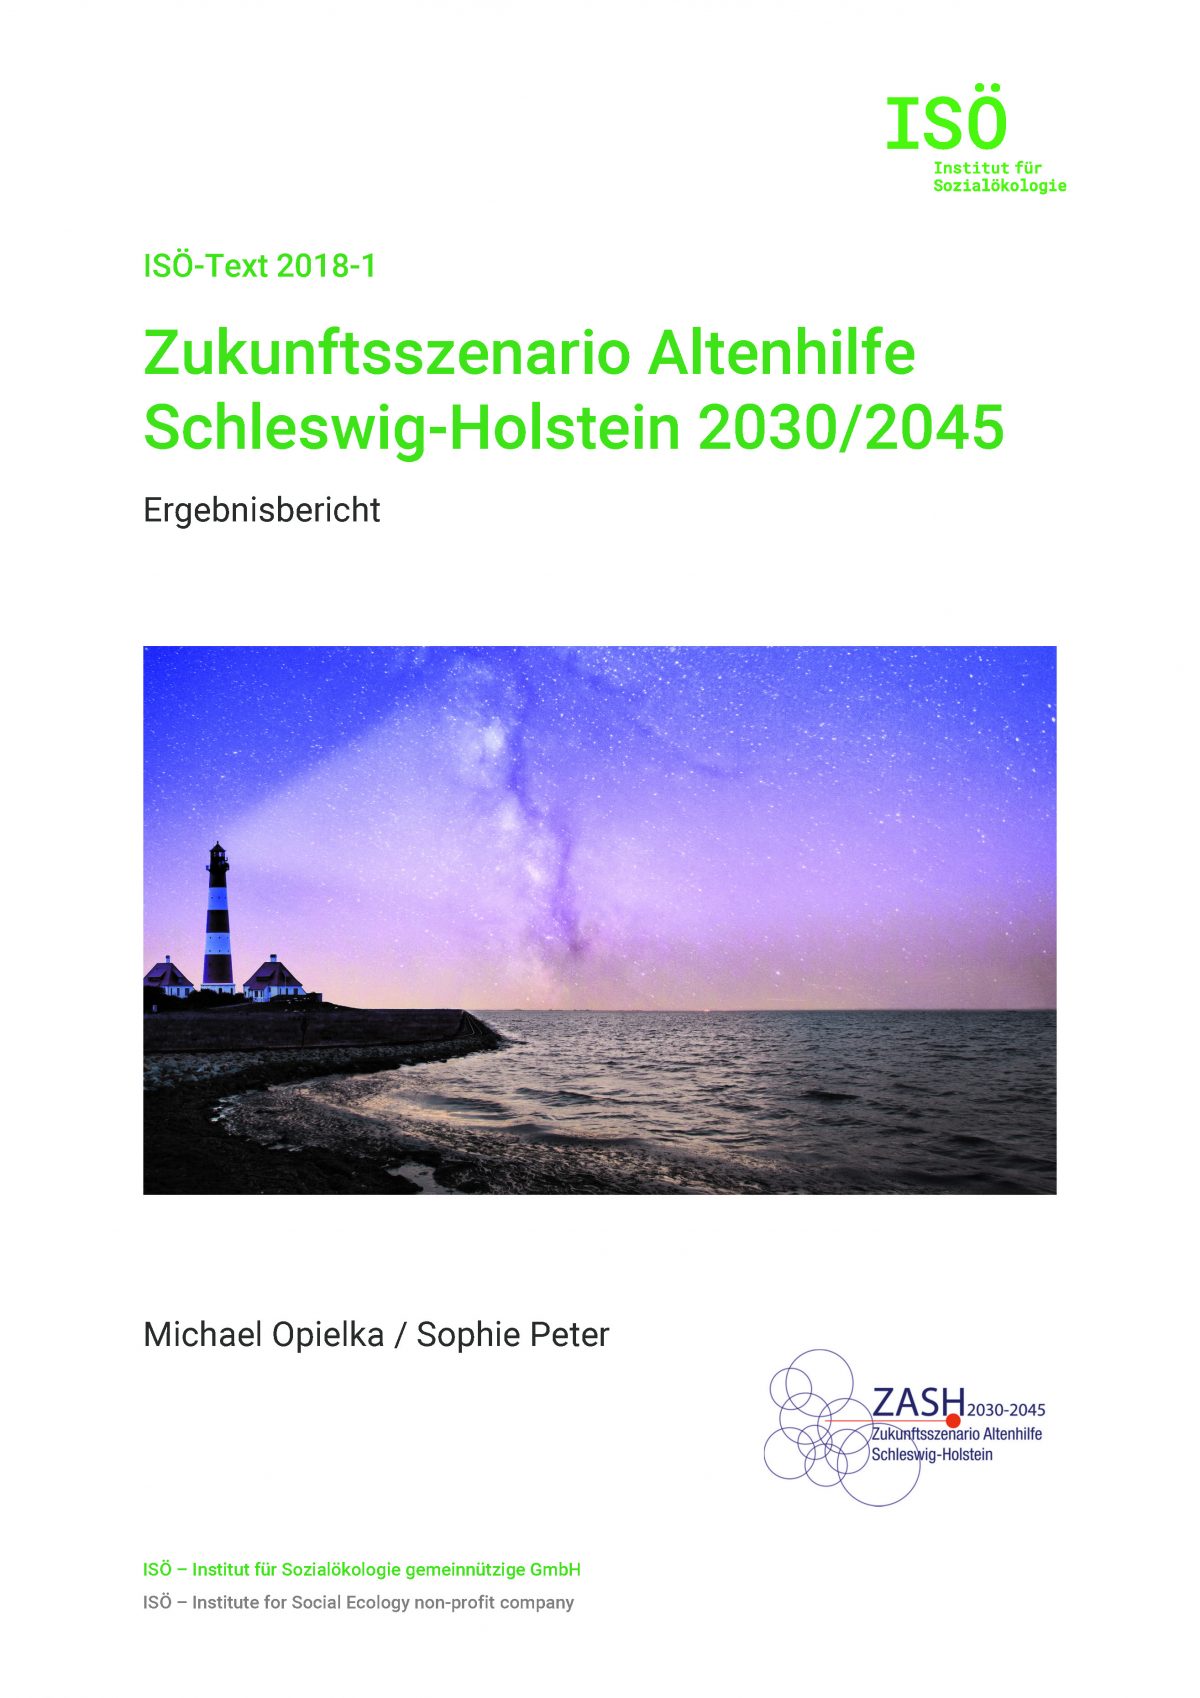 Zukunftsszenario Altenhilfe 2030/2045 – Ergebnisbericht erschienen! 